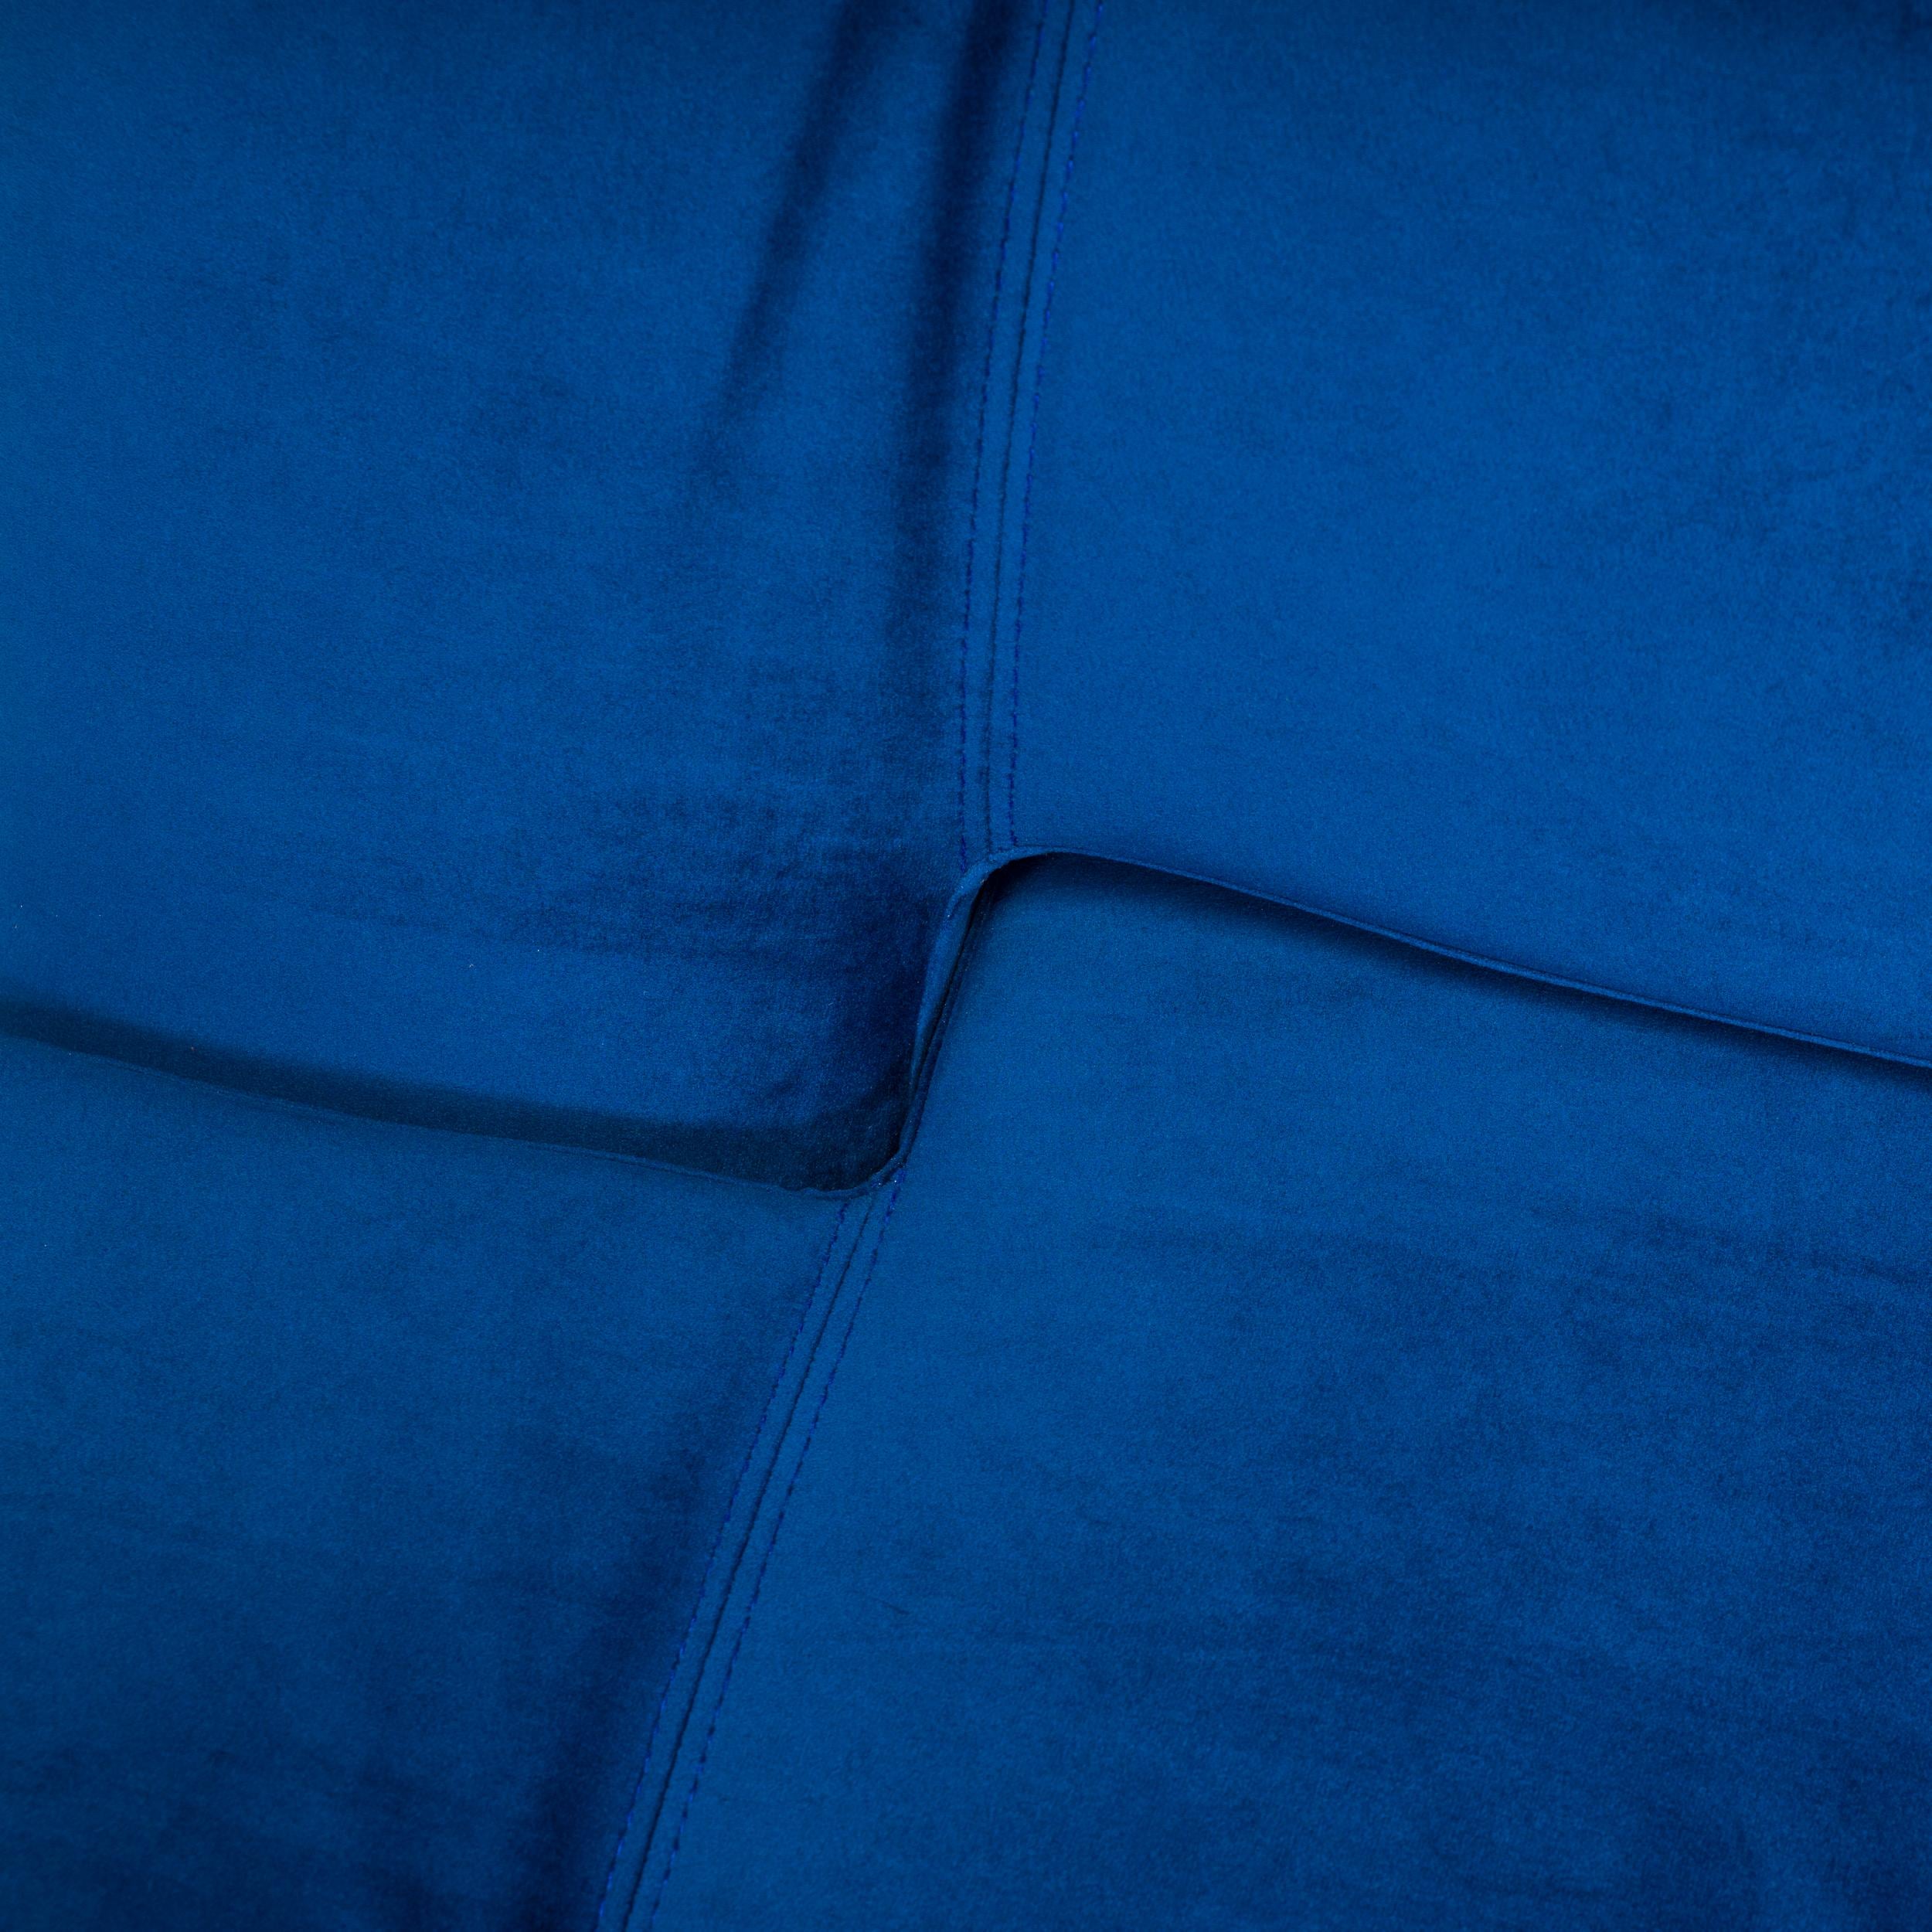 Heal’s Hinge Blue Velvet Sofa Bed 3